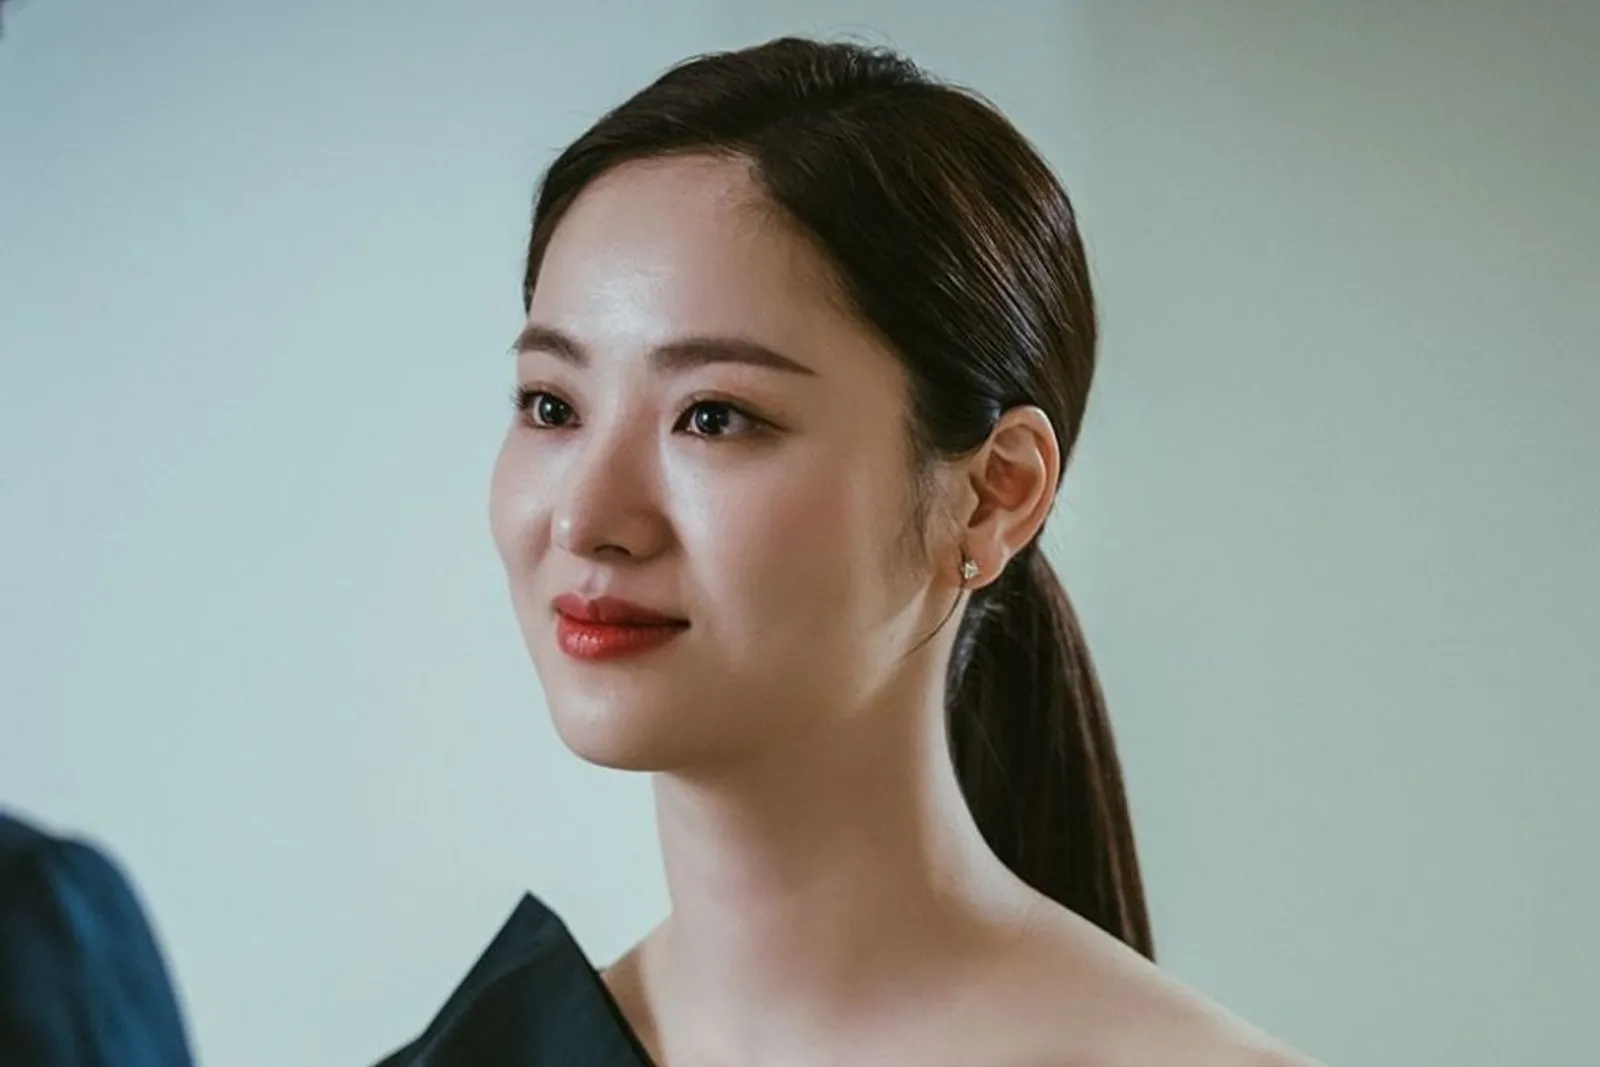 Pesona Fearless Jeon Yeo Bin di K-Drama Vincenzo